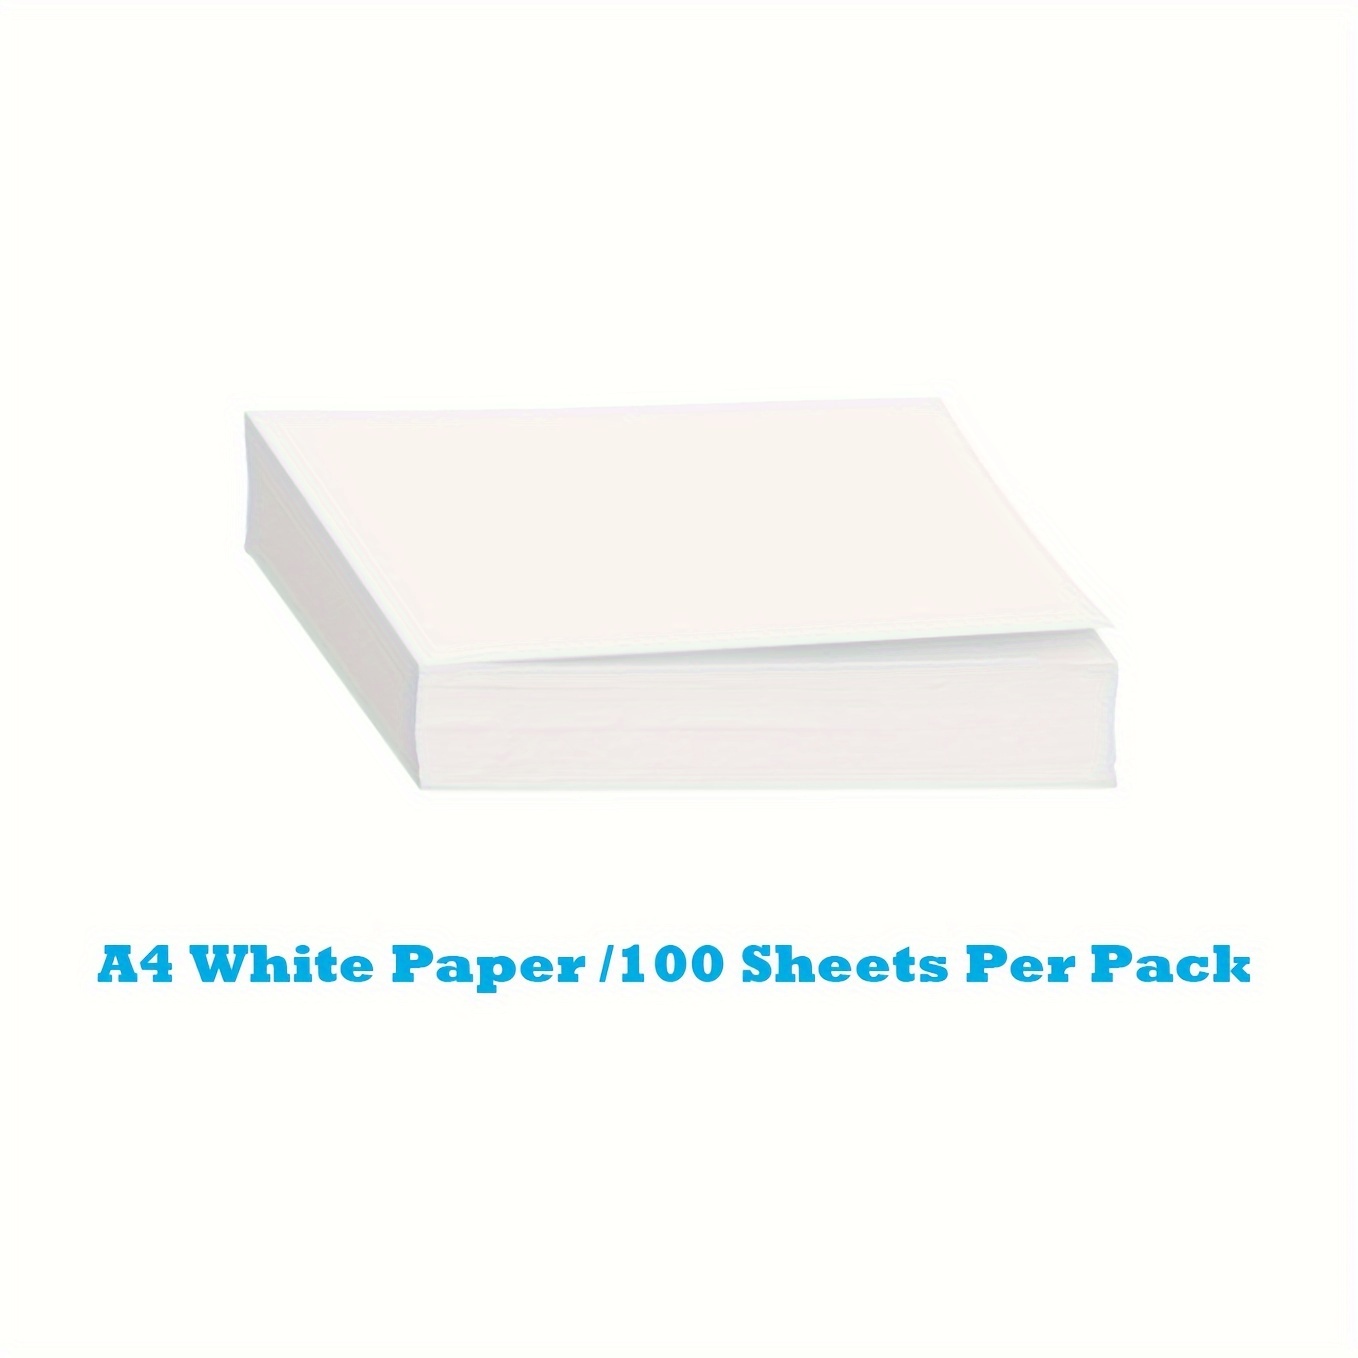 Copy Paper A4 Paper A4 Copy White Paper Office - Temu